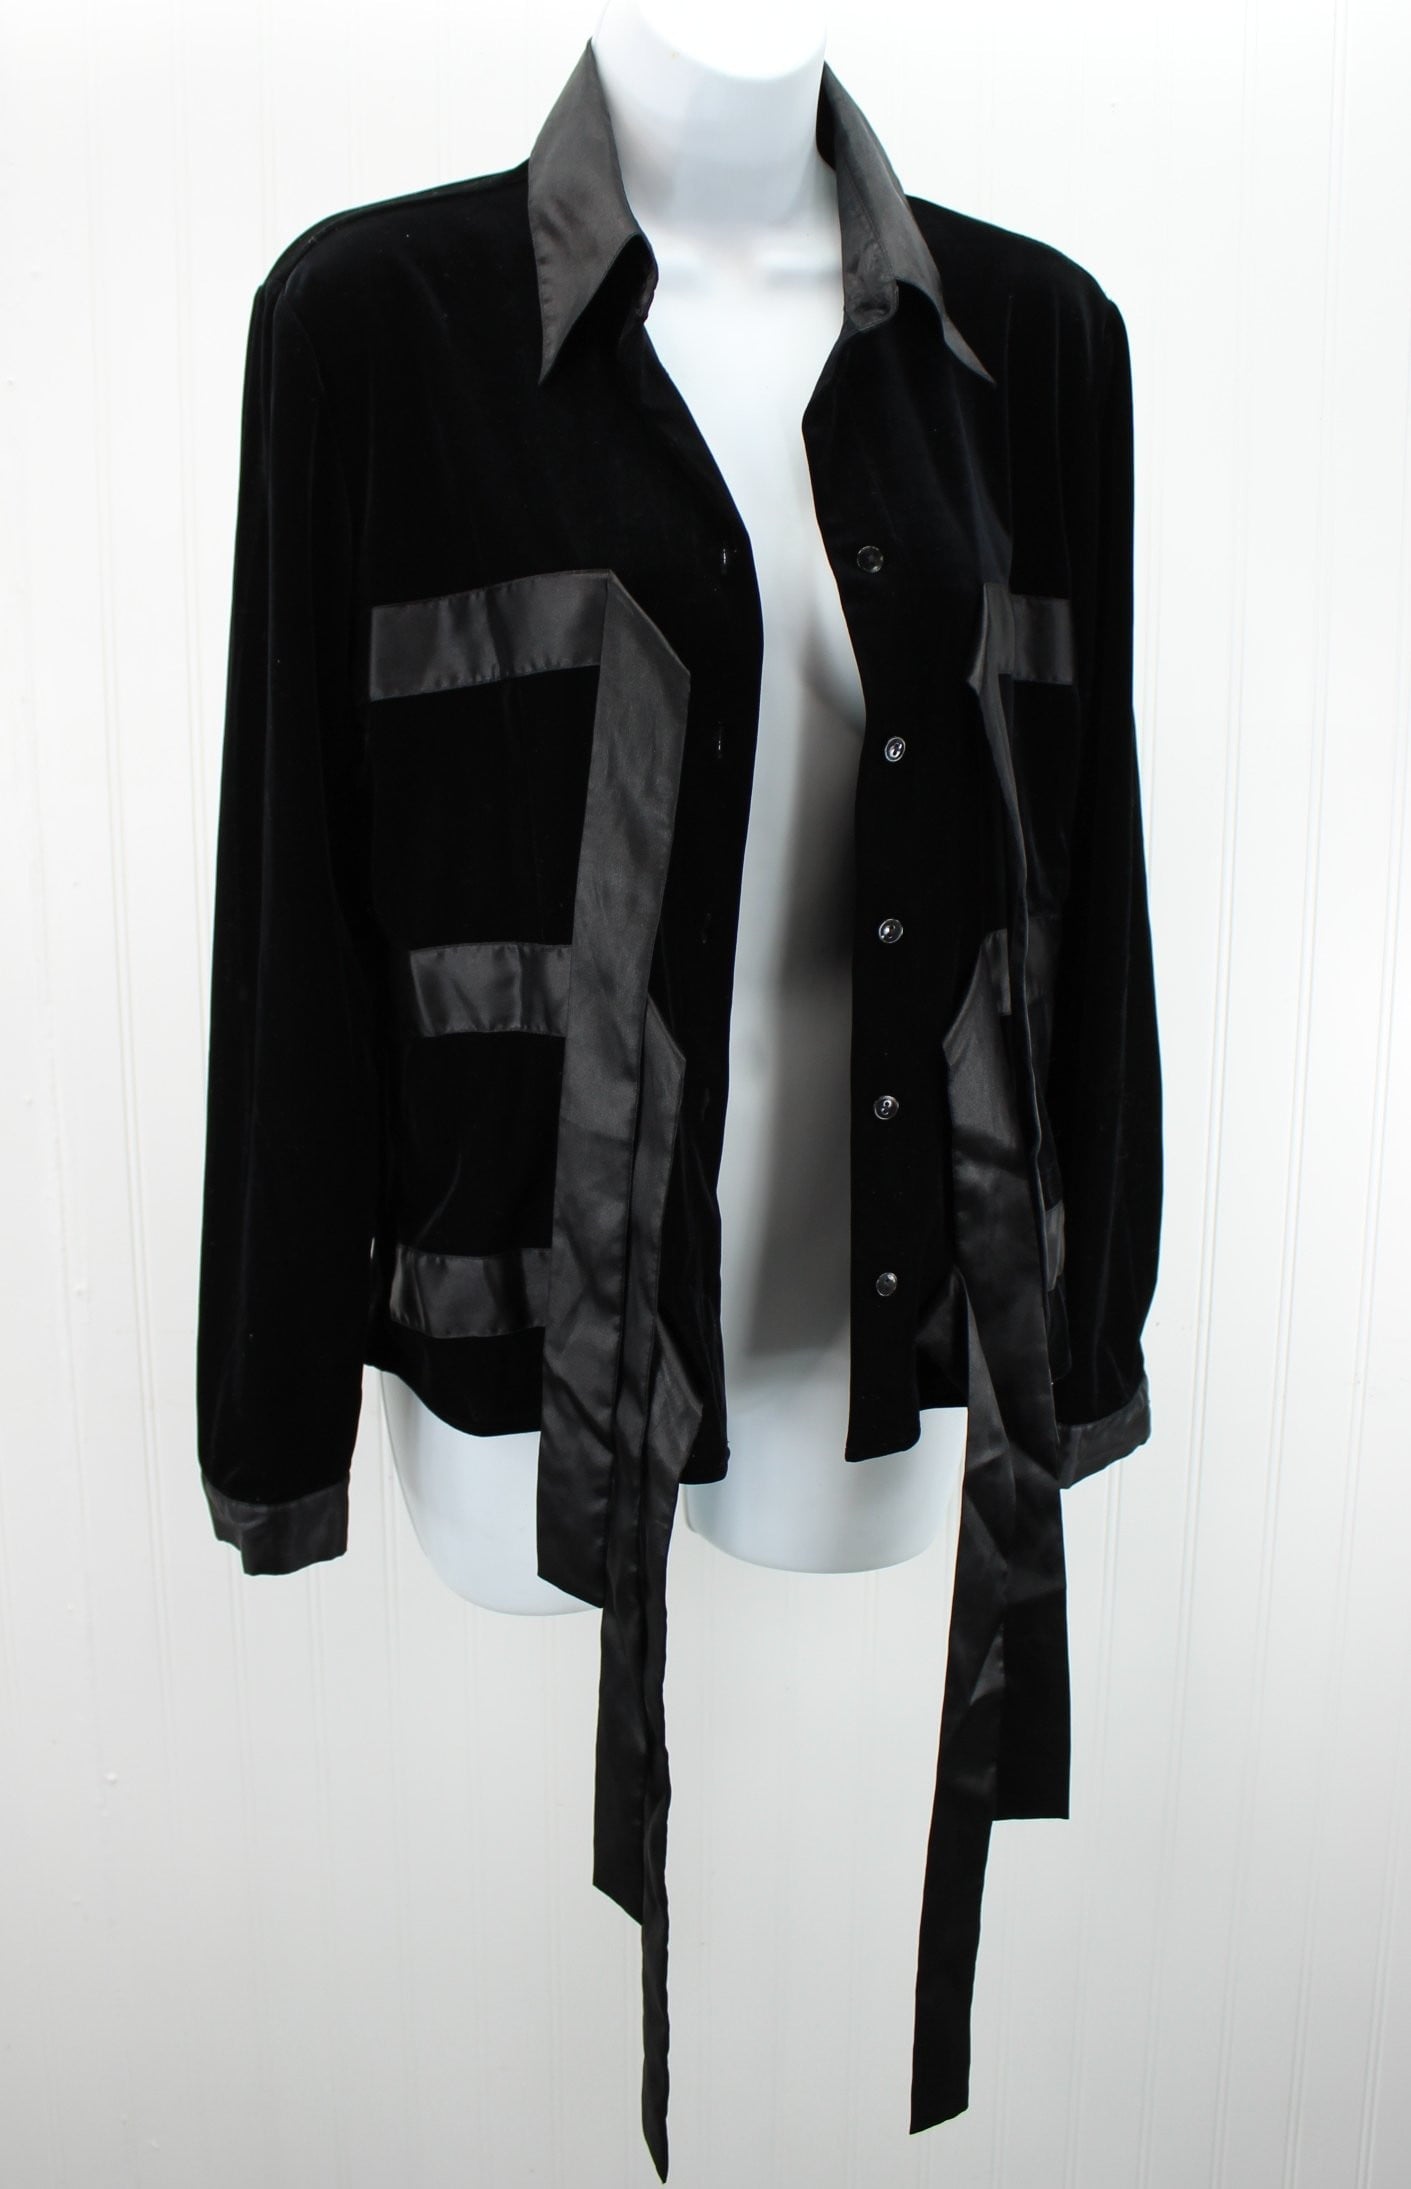 D & Y Evening Jacket - Unlined Black Velveteen Ribbon Ties - Medium lots of ribbons